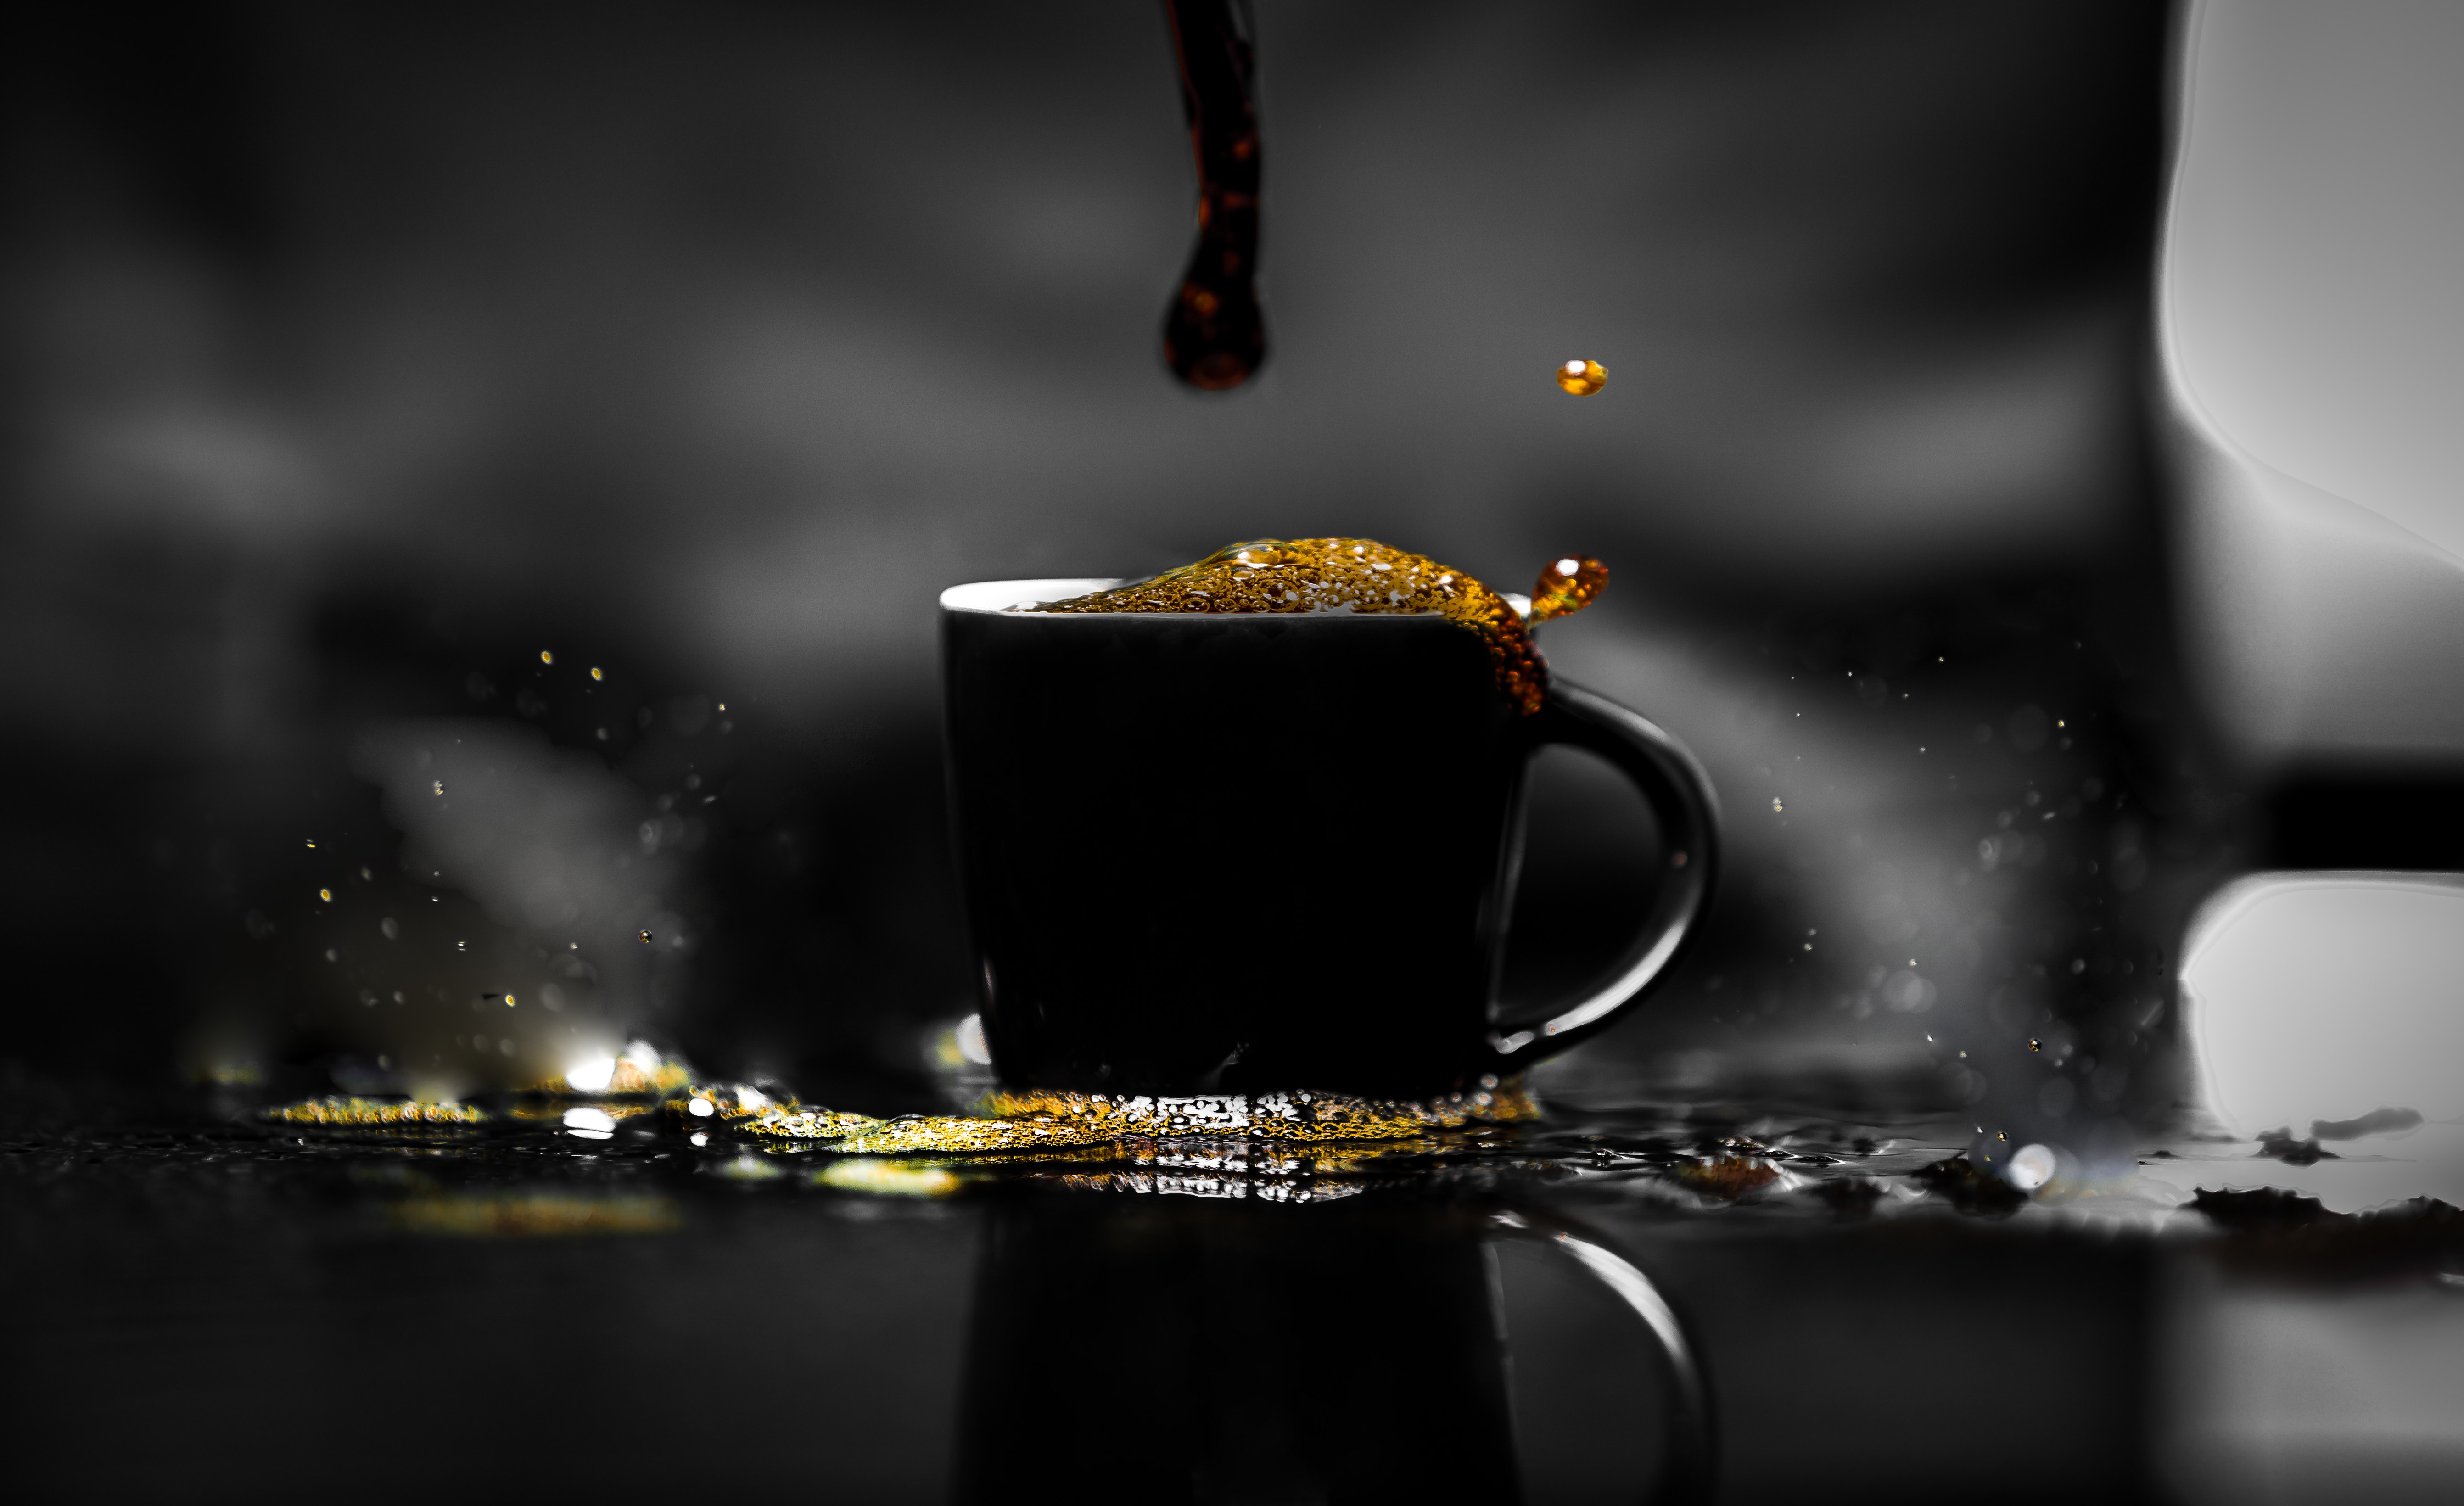 Best Coffee Desktop Images